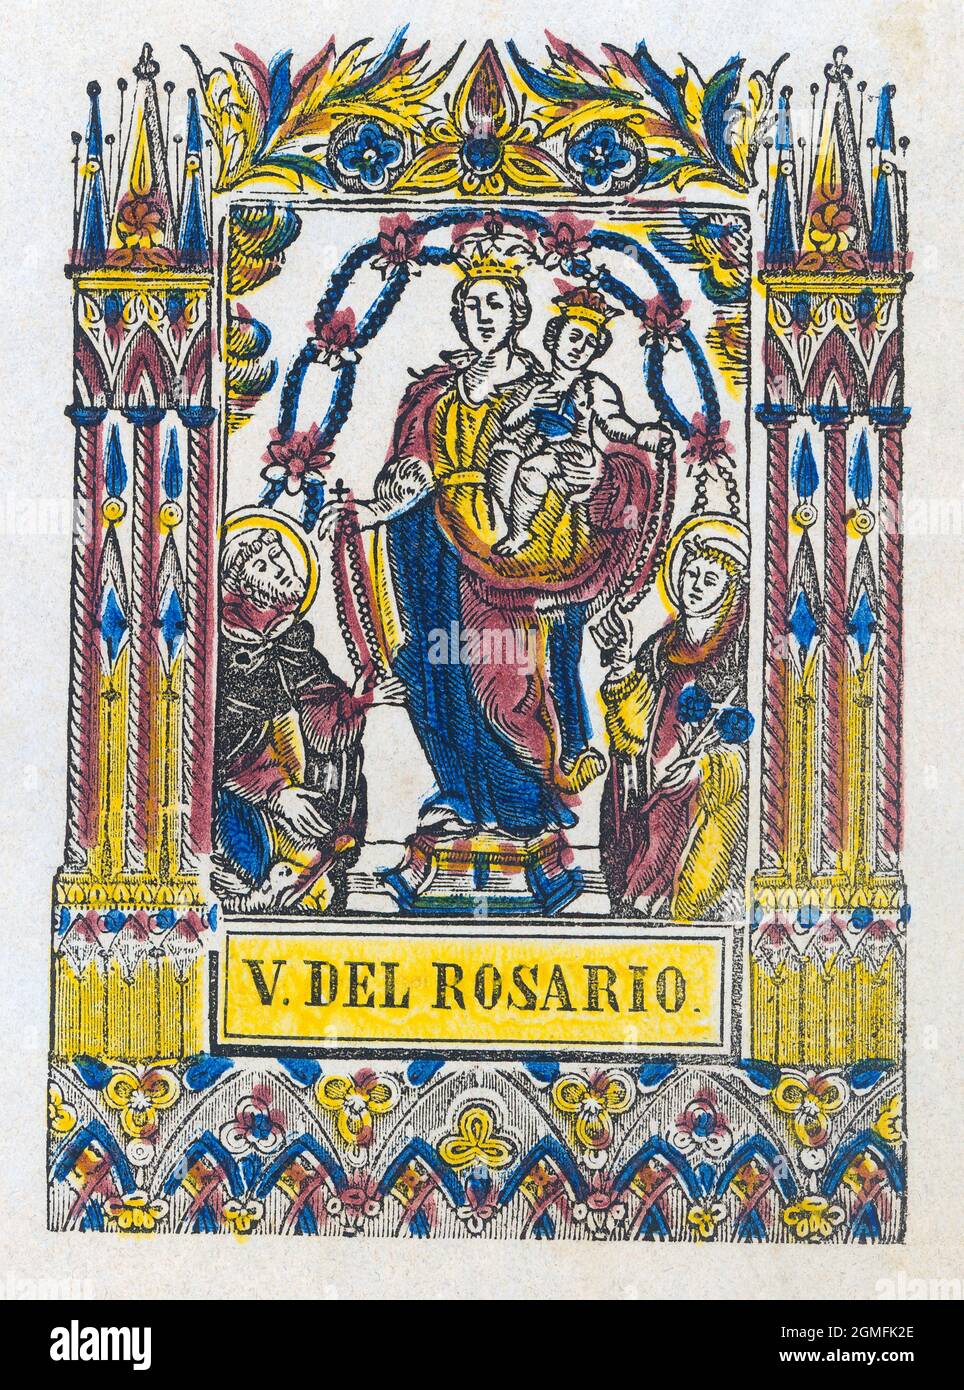 Virgen del Rosario. Estamperia popular del siglo XIX pintado a mano. Stock Photo